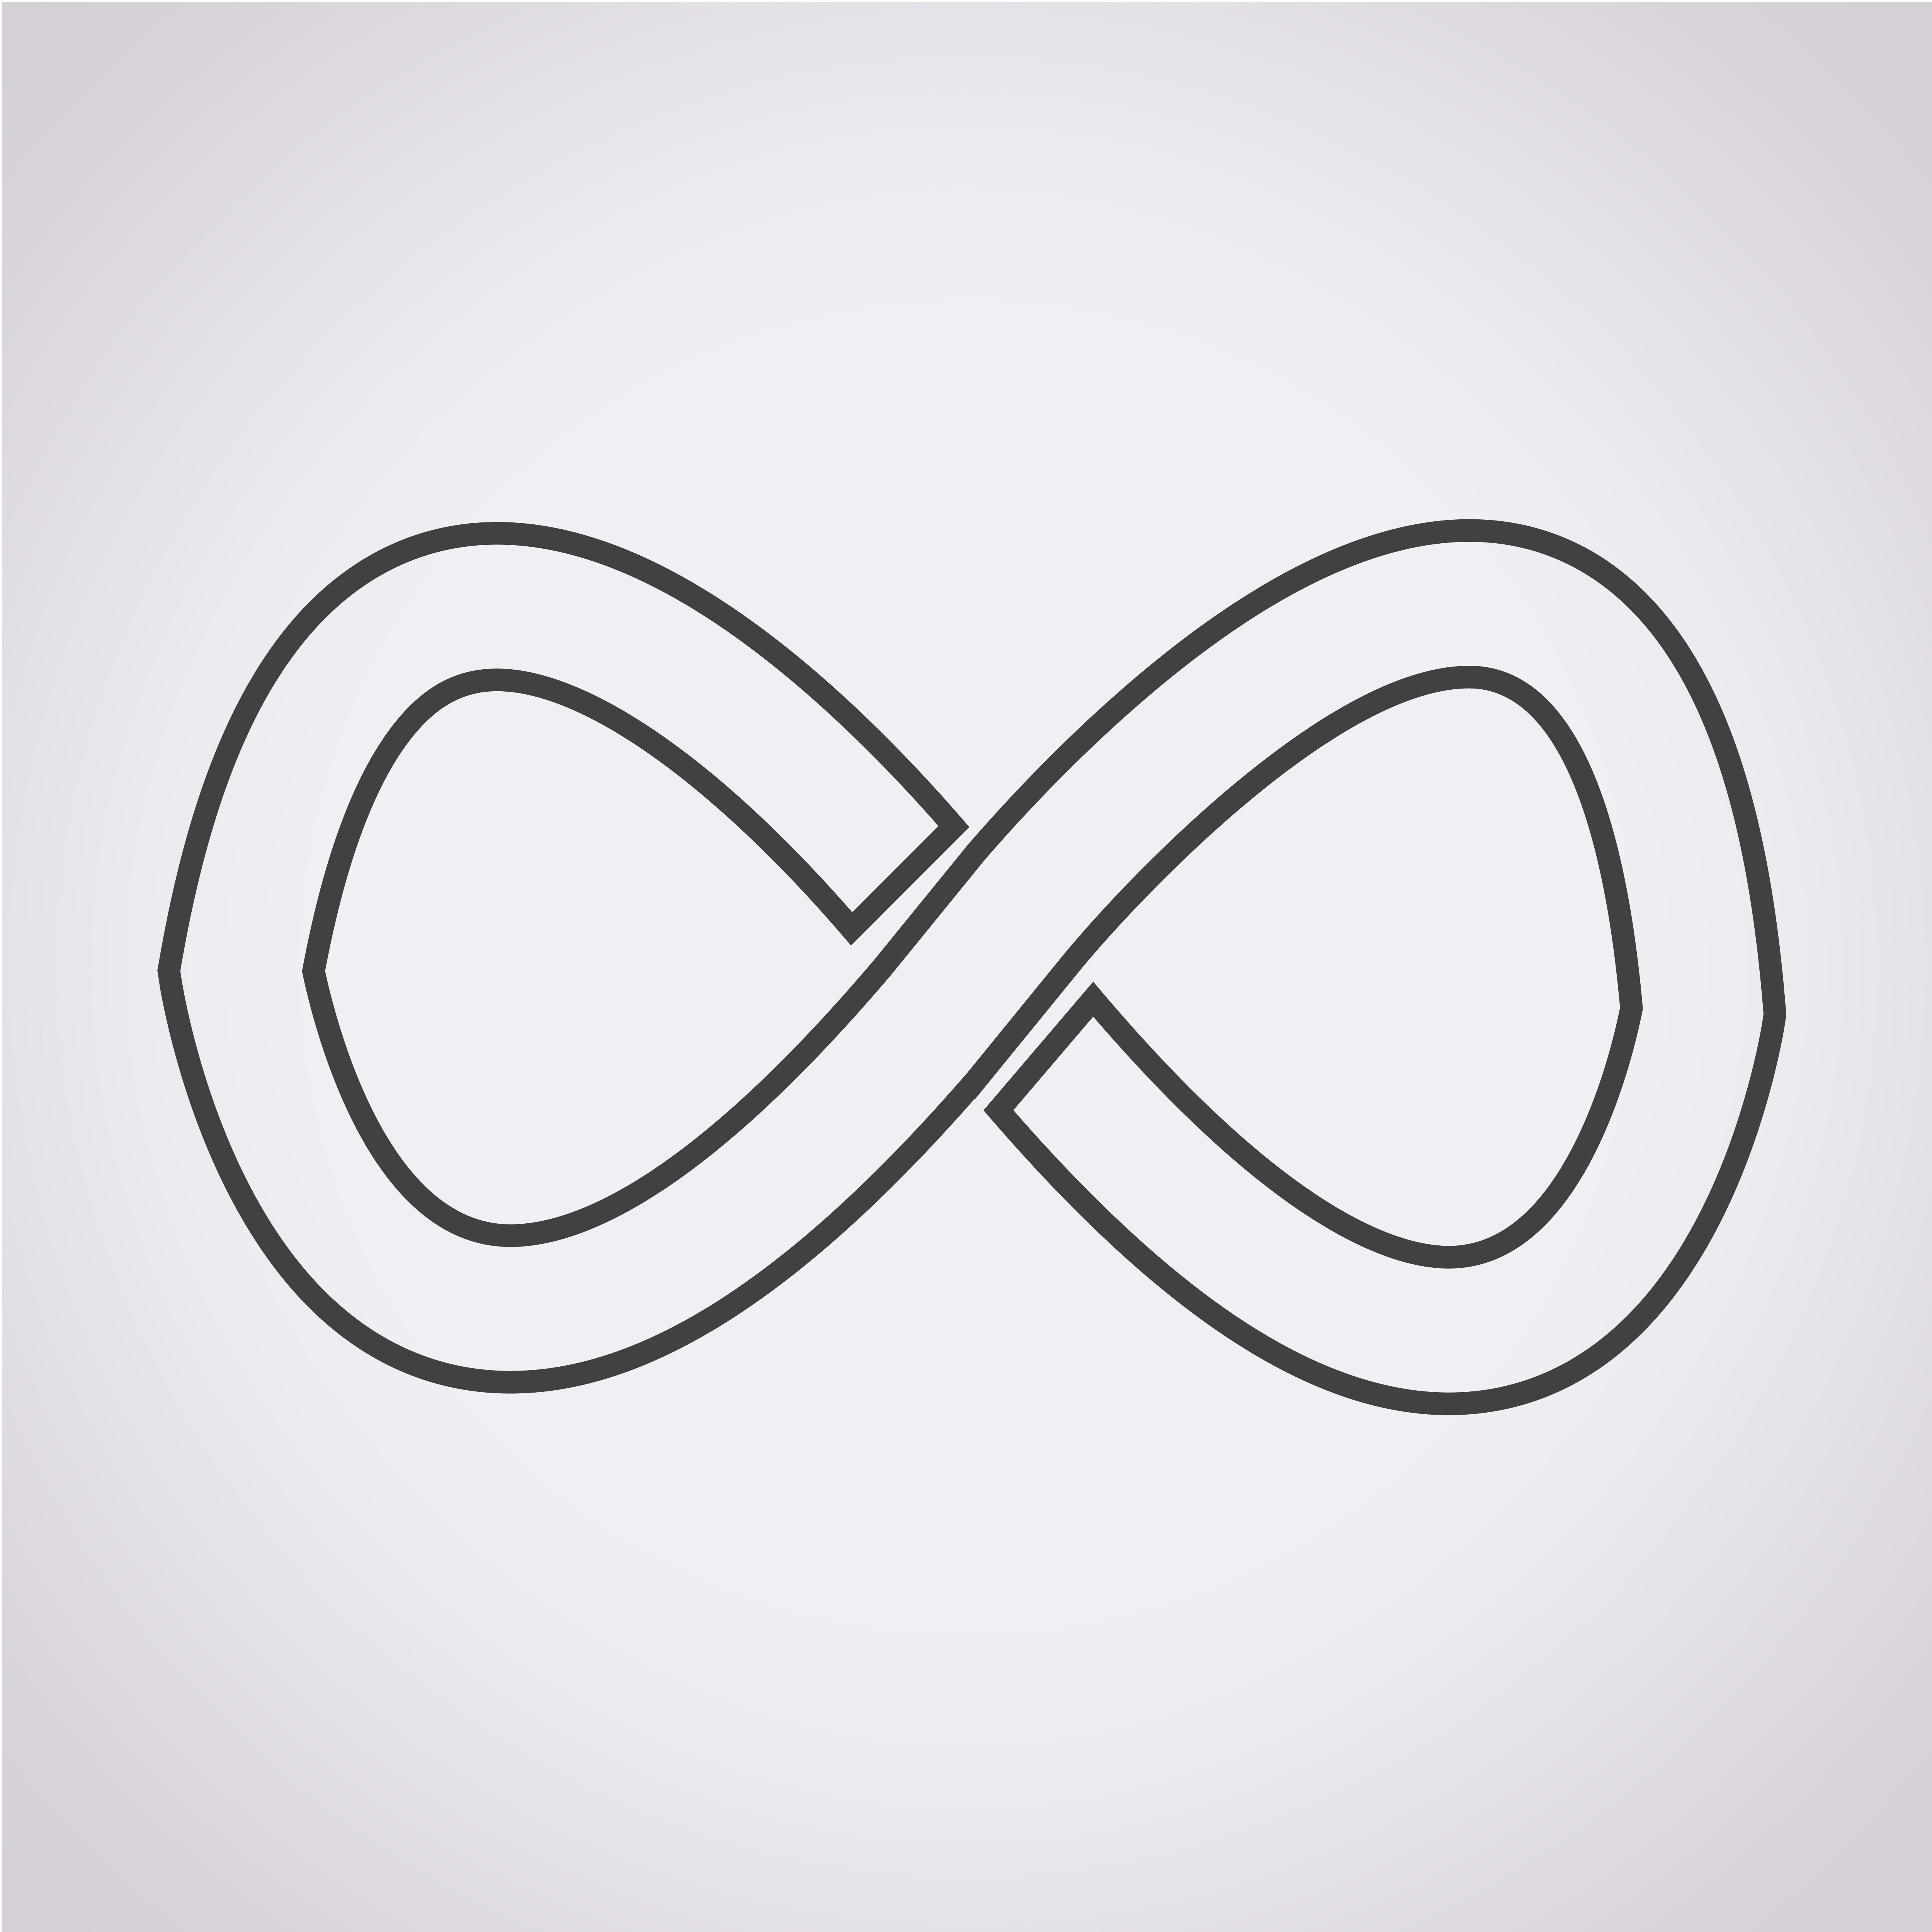 infinity symbol symbol sign 649299 - Download Free Vectors, Clipart